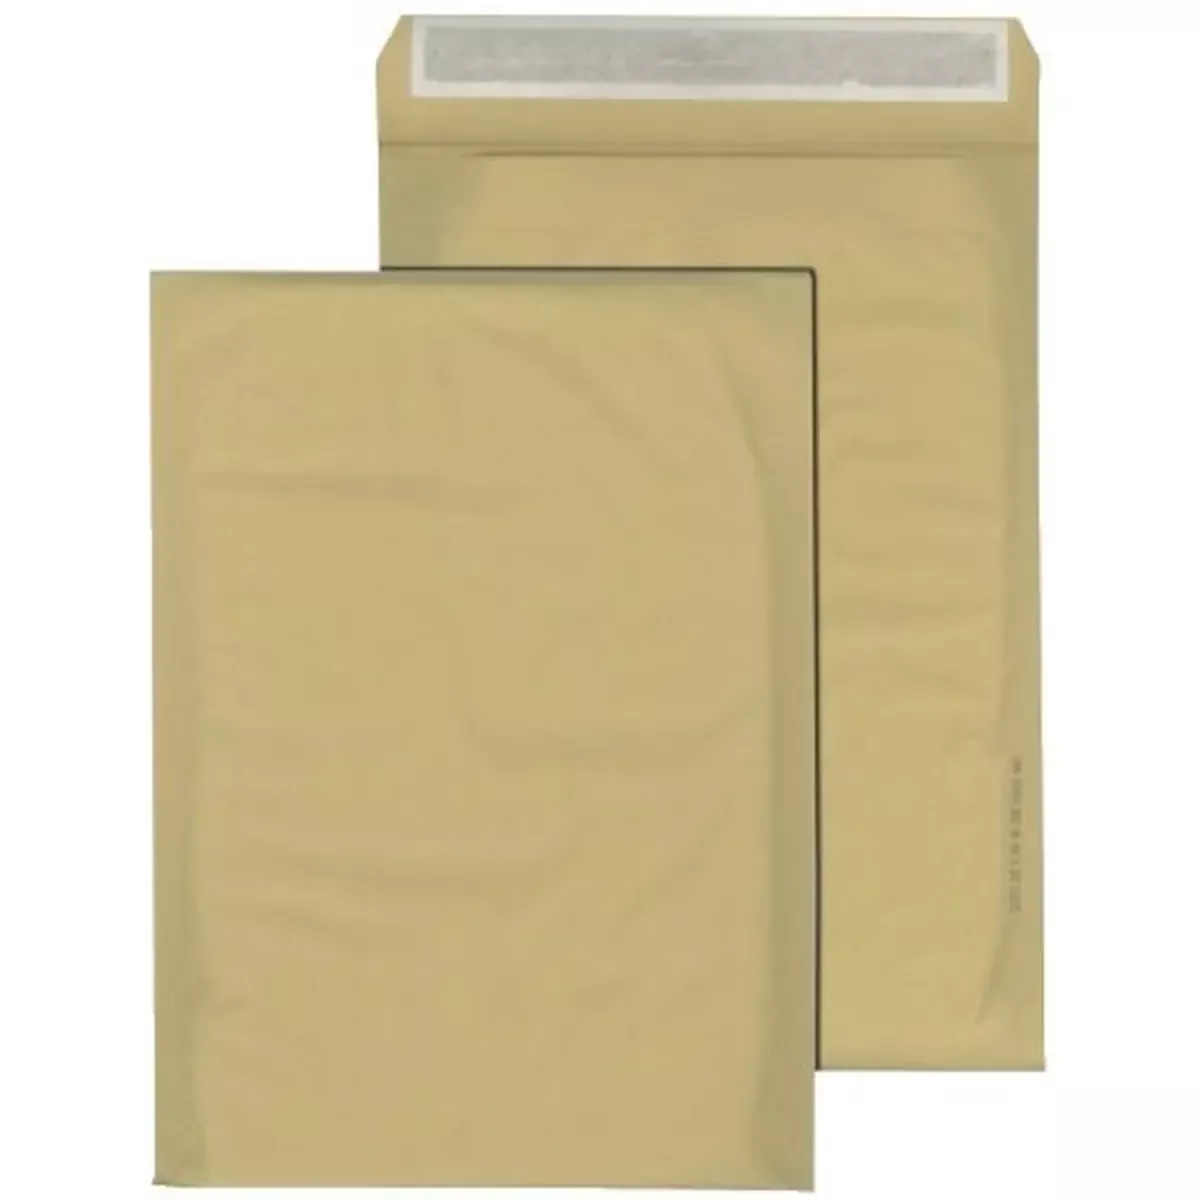 Büromaterial Papierpolstertasche C - 145 x 215 mm, braun für Bürobedarf